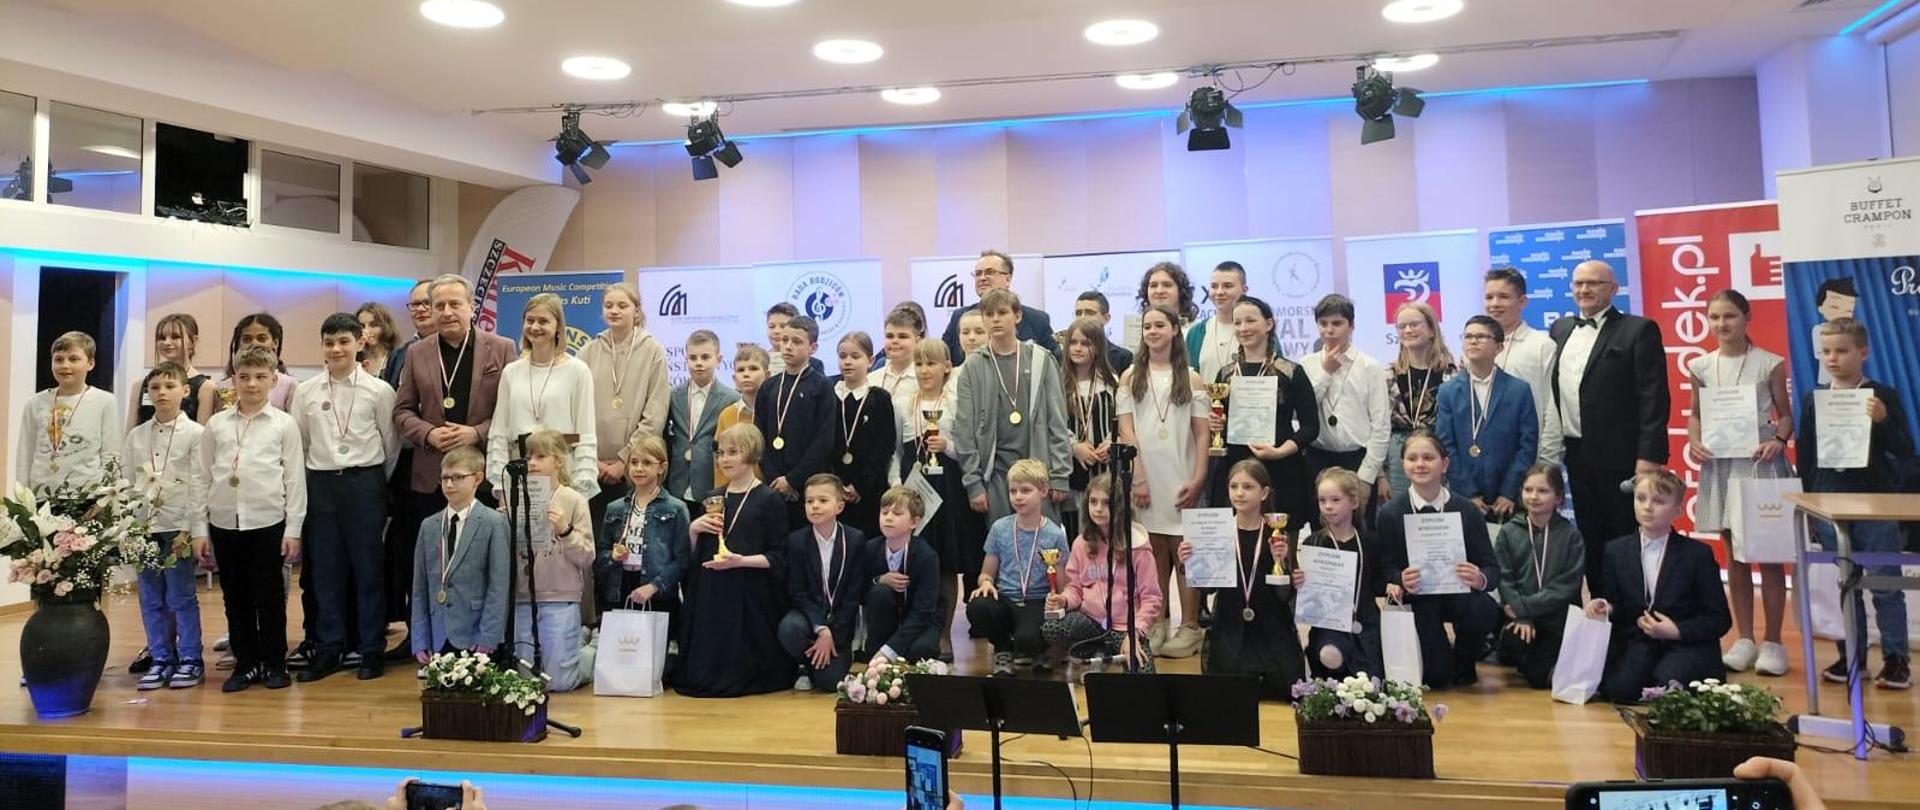 Na scienie liczna grupa młodzięzy - laureatów XI Zachodniopomorskiego Festiwalu Klarnetowego w Szczecinie.